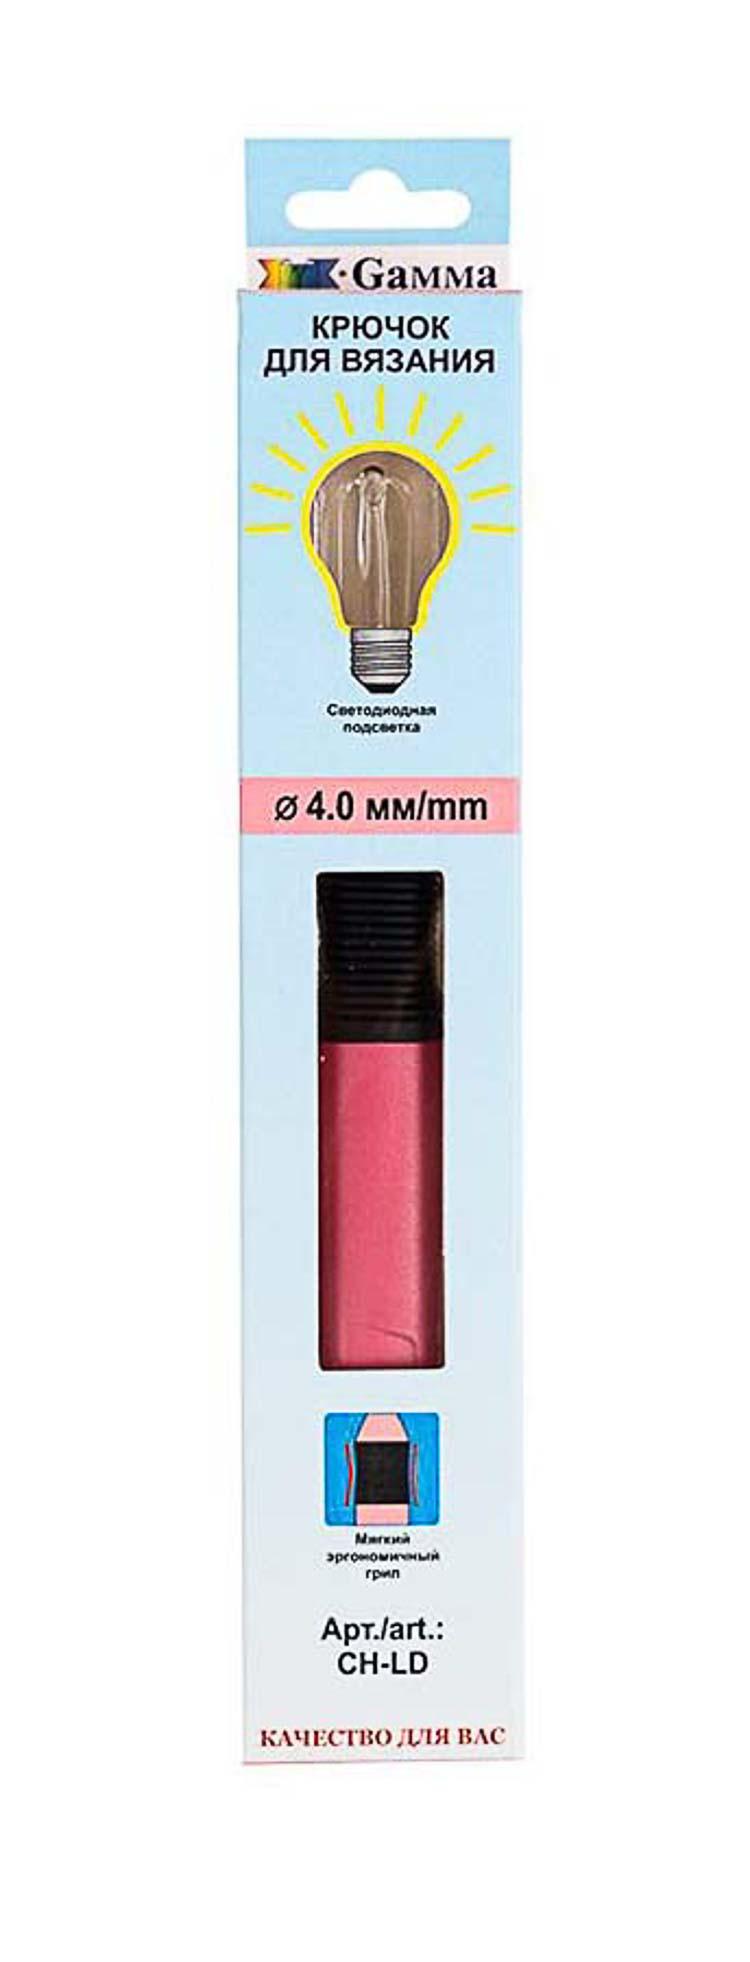 Для вязания Gamma CH-LD крючок с подсветкой пластик d 4.0 мм 15.6 см в картонной упаковке с европодвесом